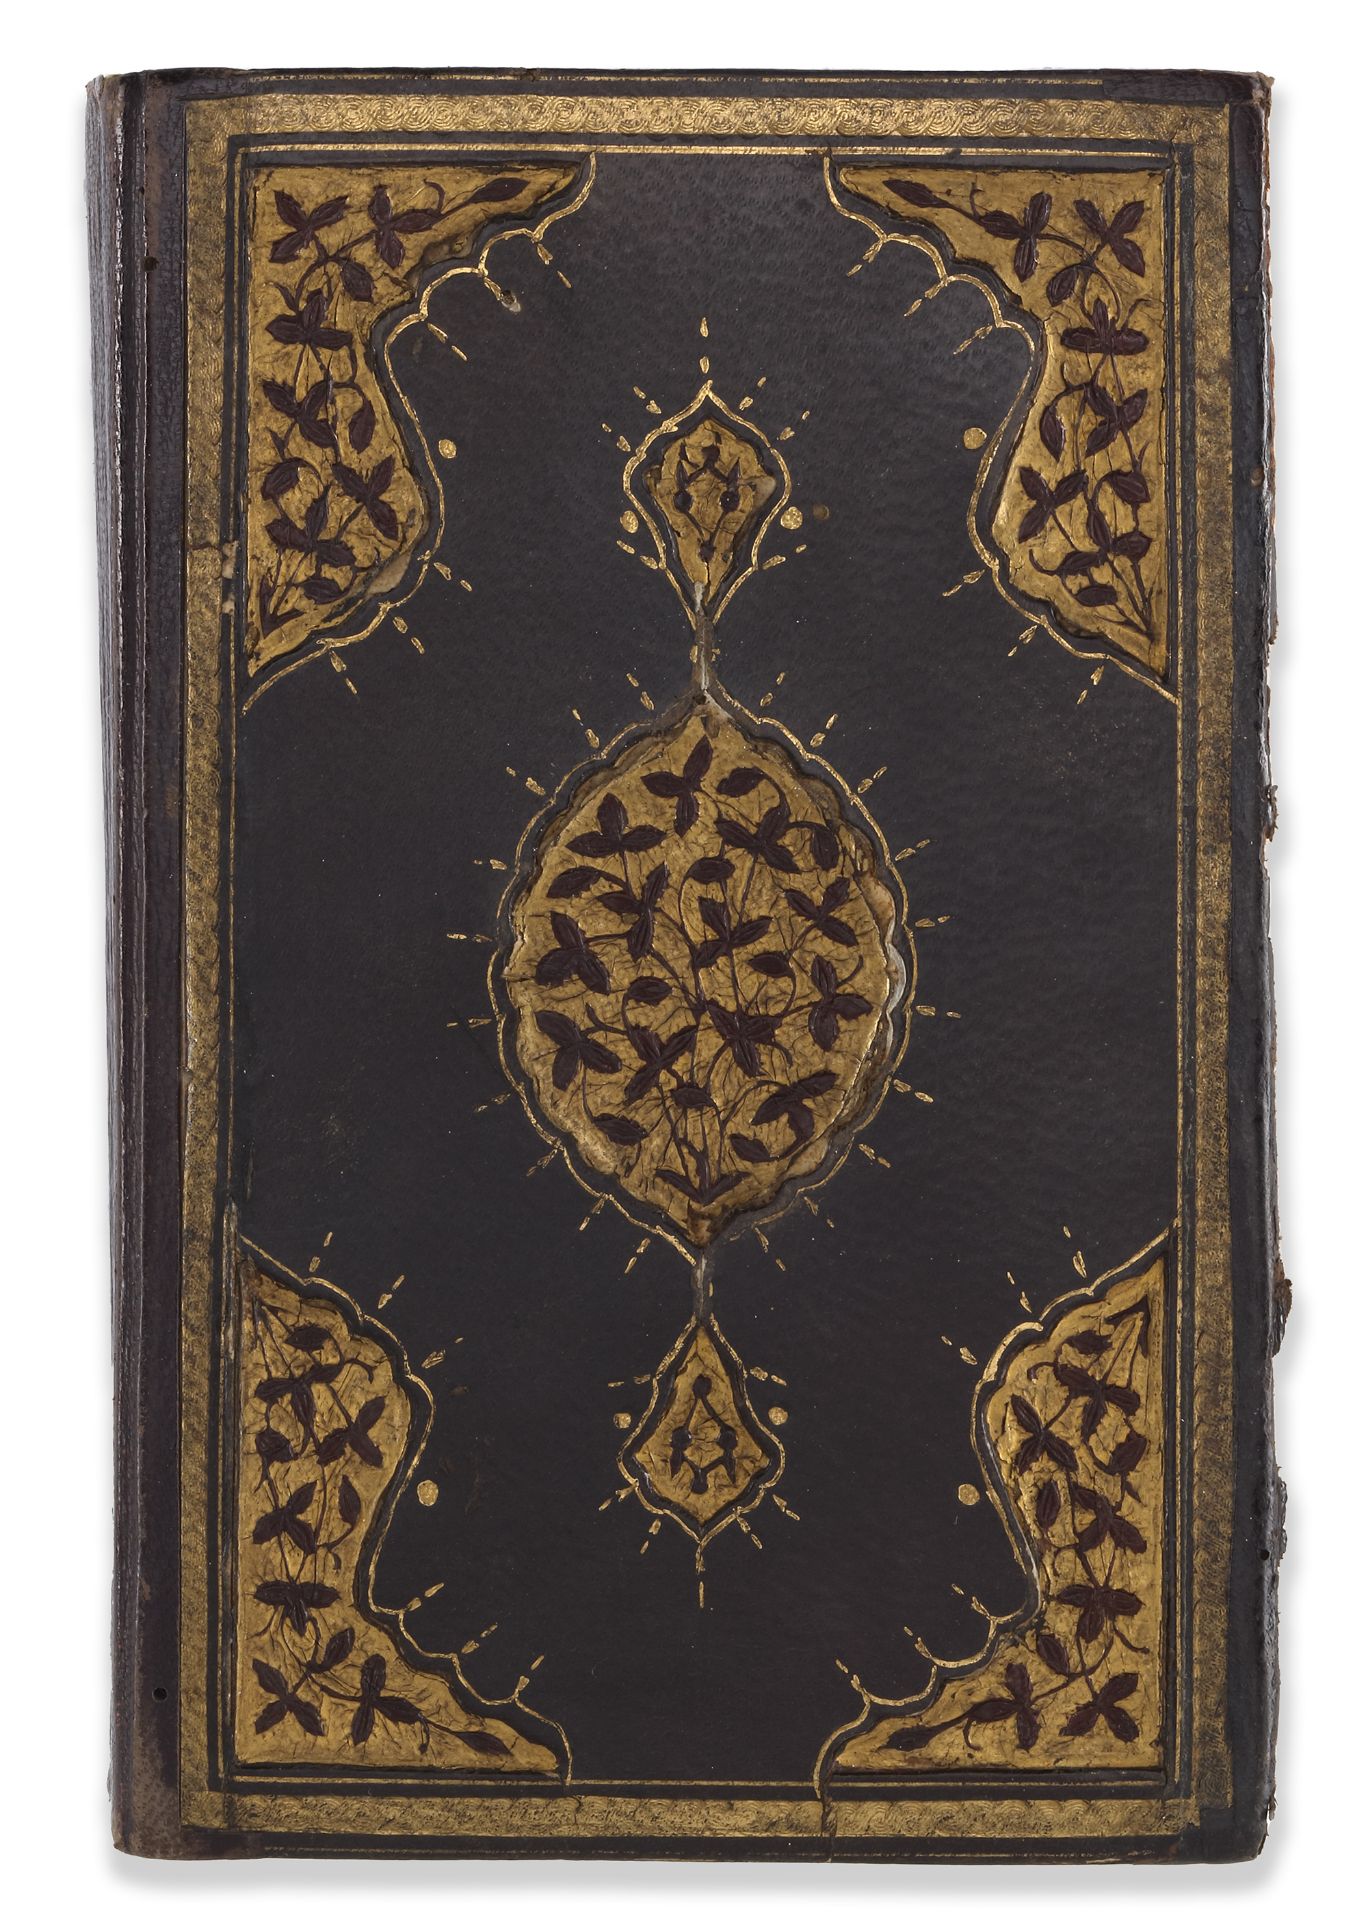 A QURAN SIGNED BY SEYYID ABDULKADIR EFENDI, OTTOMAN TURKEY, DATED 1142 AH/1729 AD - Image 5 of 5